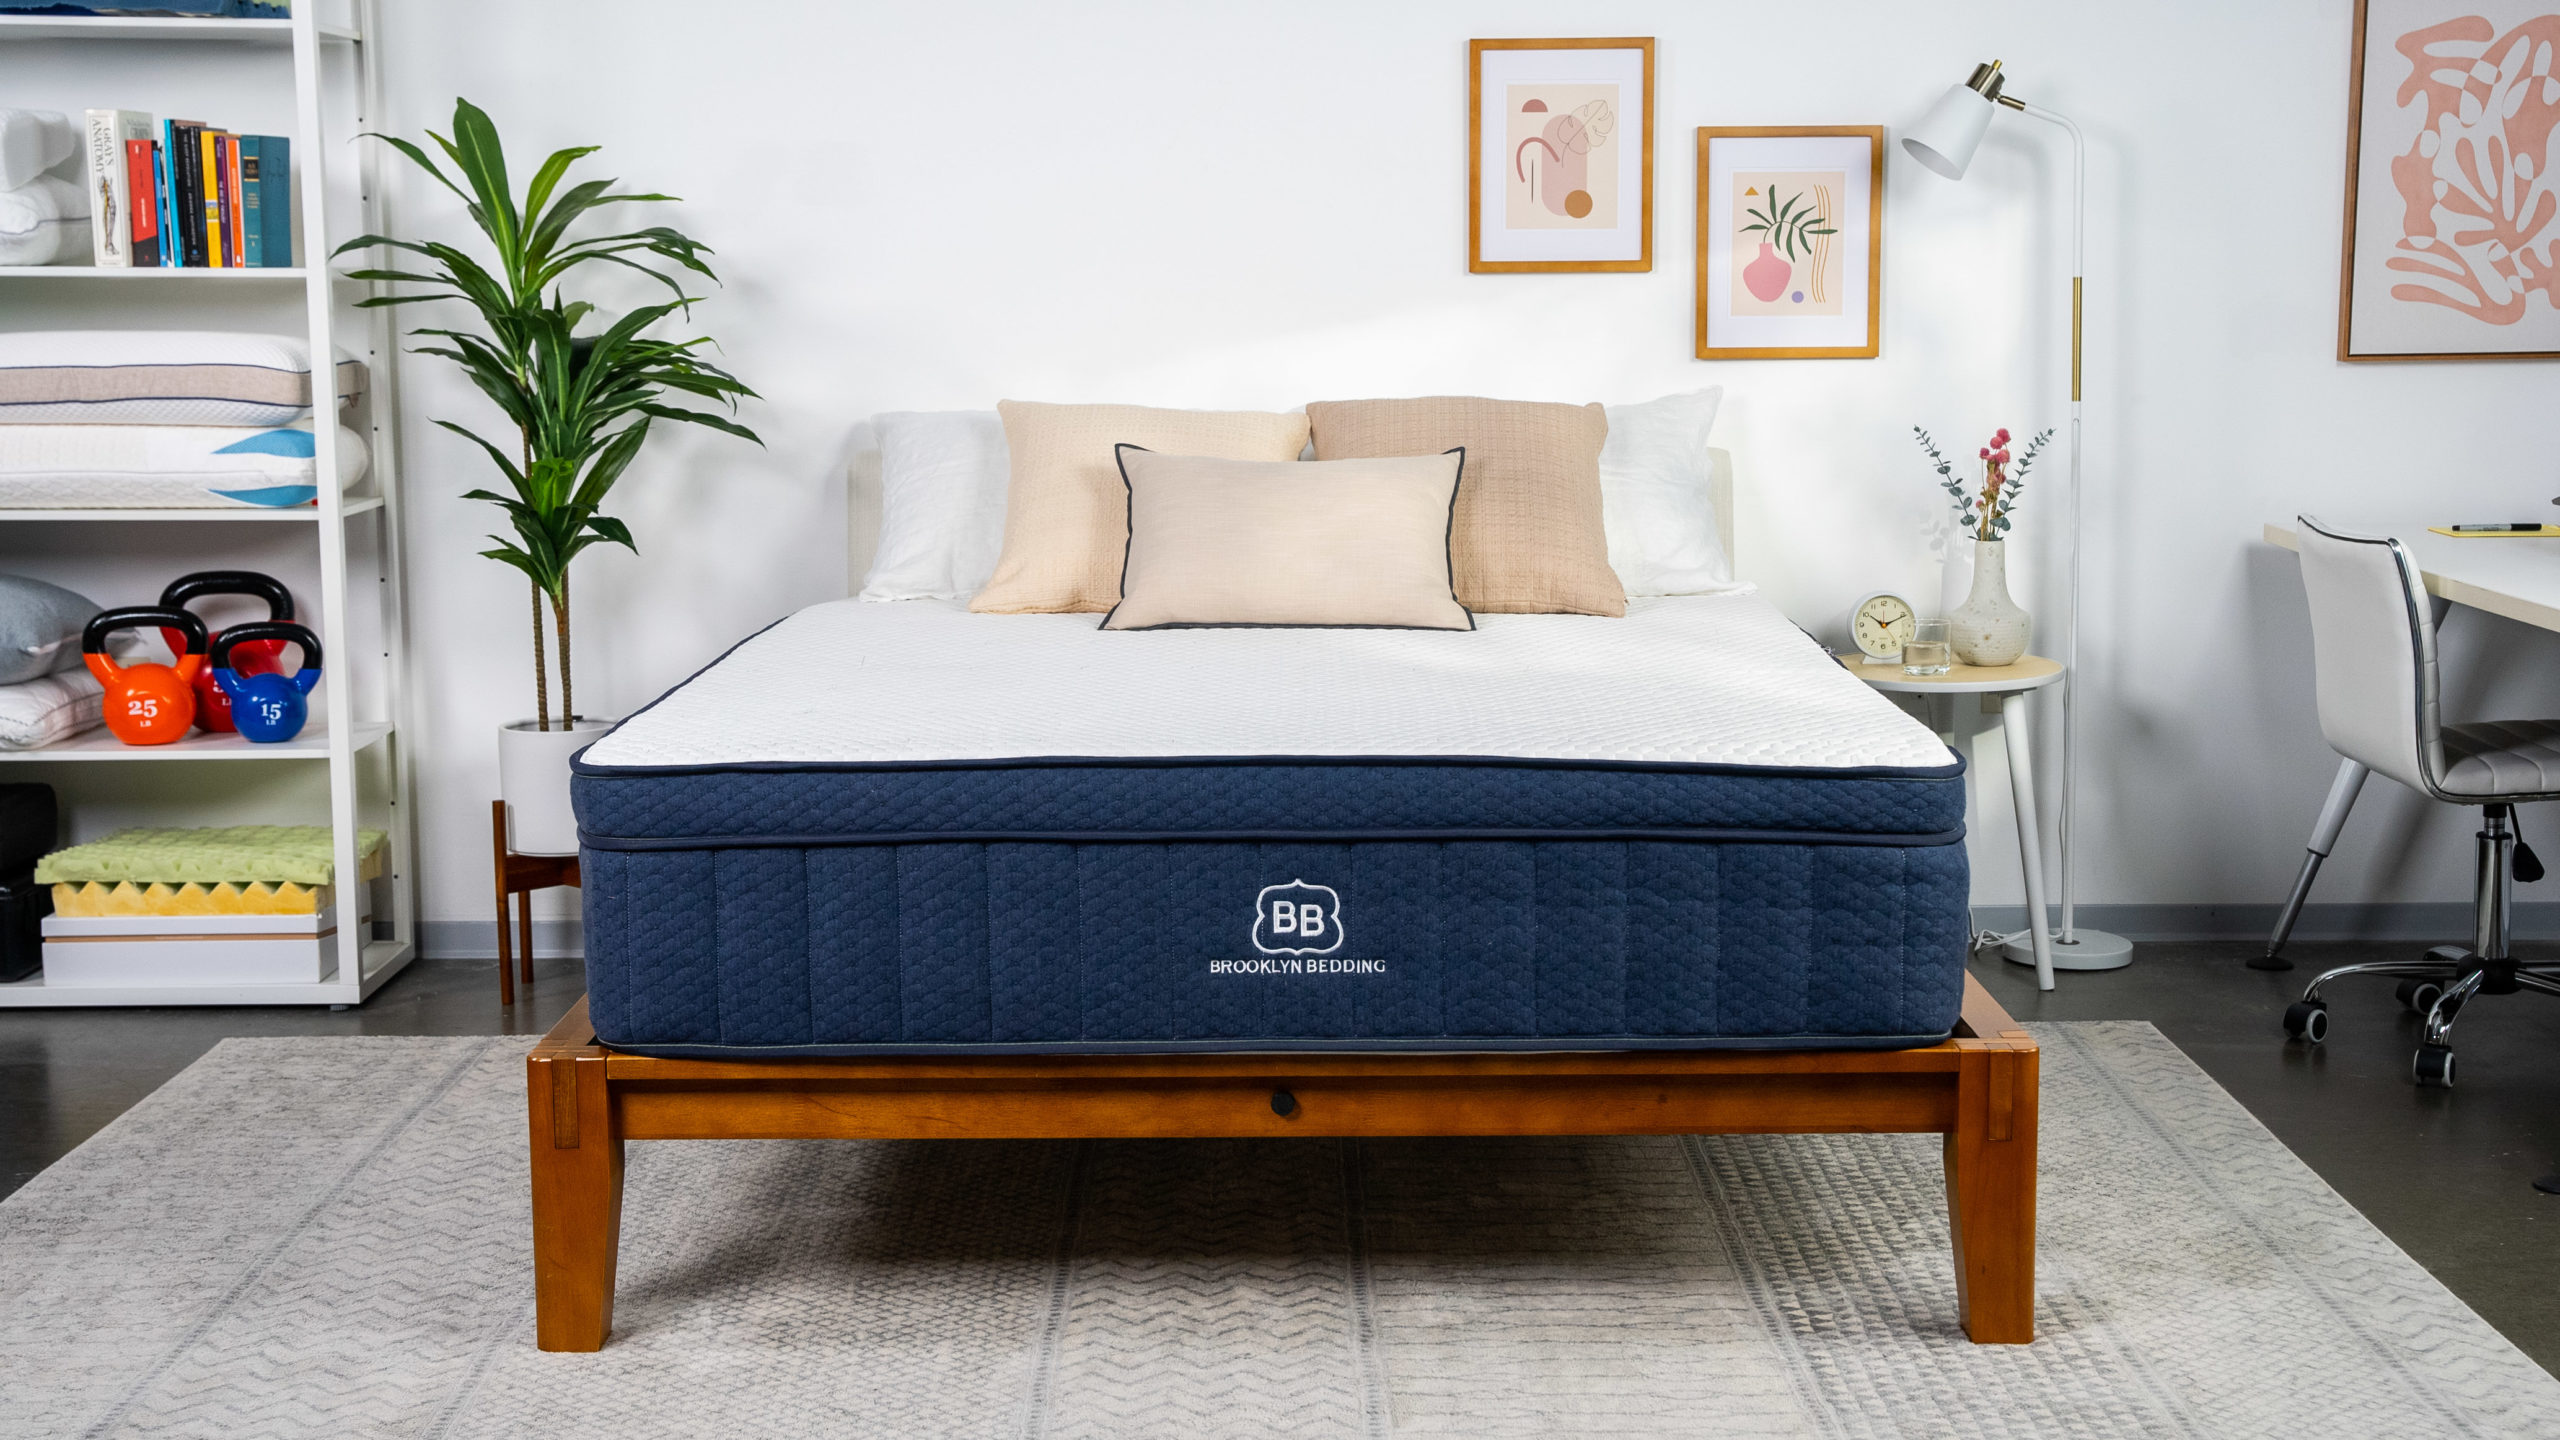 mattress reviews simmons dream beds